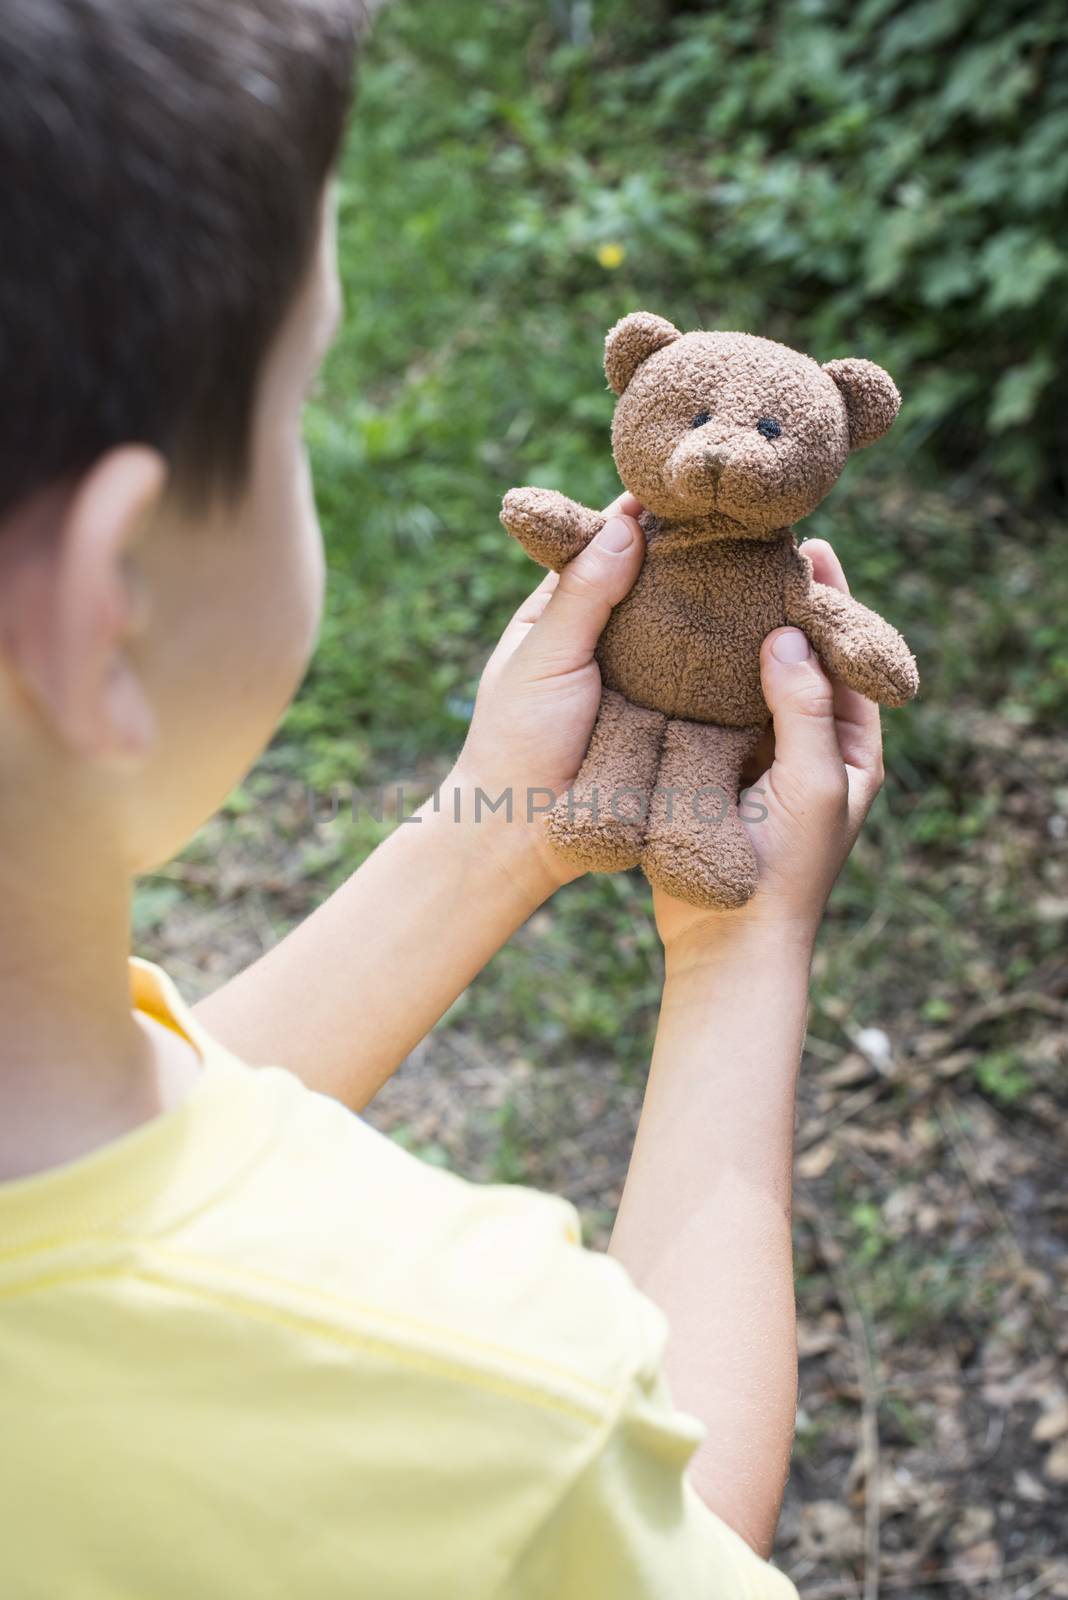 Child hold teddy in a garden. 